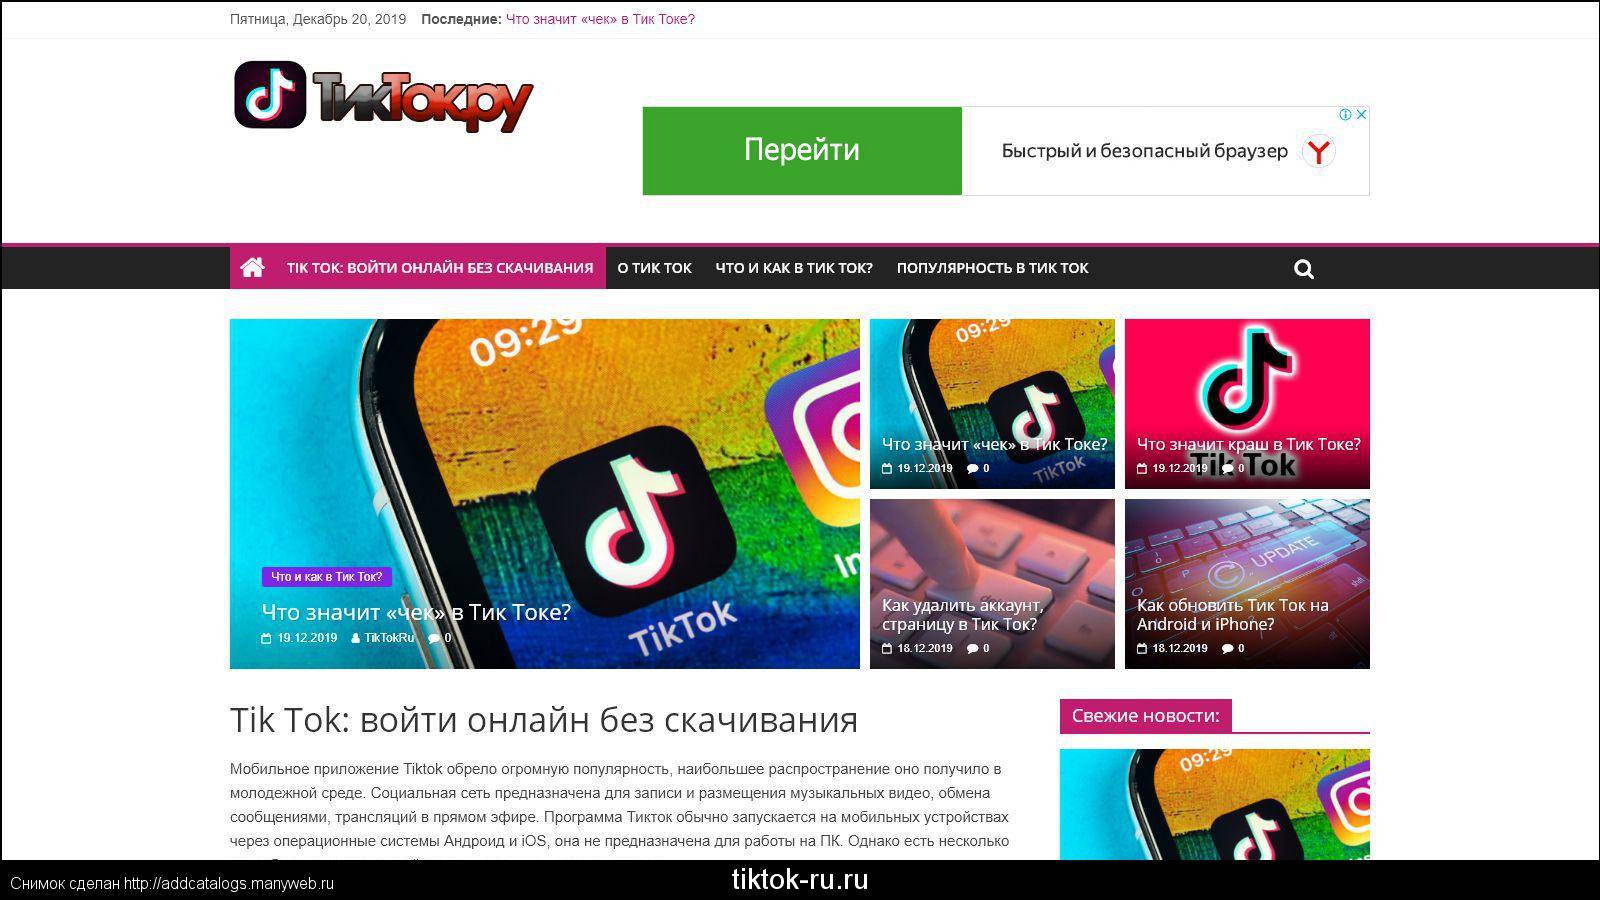 Как скачать новый тик ток на андроид через телеграмм бесплатно последнюю версию на русском языке фото 21